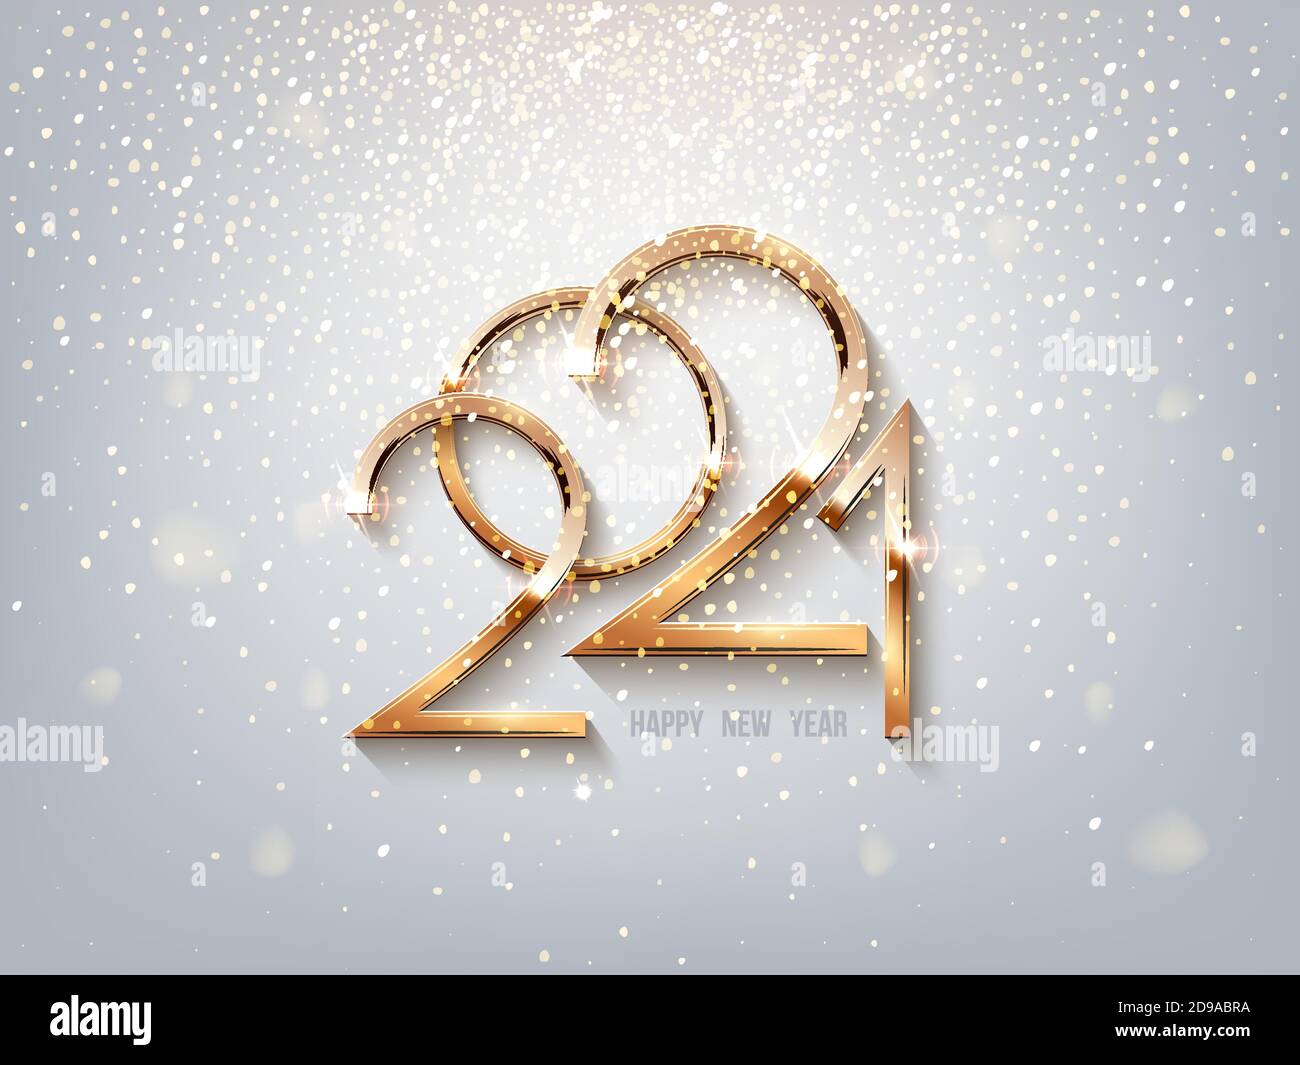 Numéros dorés lumineux de 2021 ans sur fond clair et étincelant. Fêtes d'hiver joyeux Noël décoration. Illustration du nouvel an Vector. Illustration de Vecteur